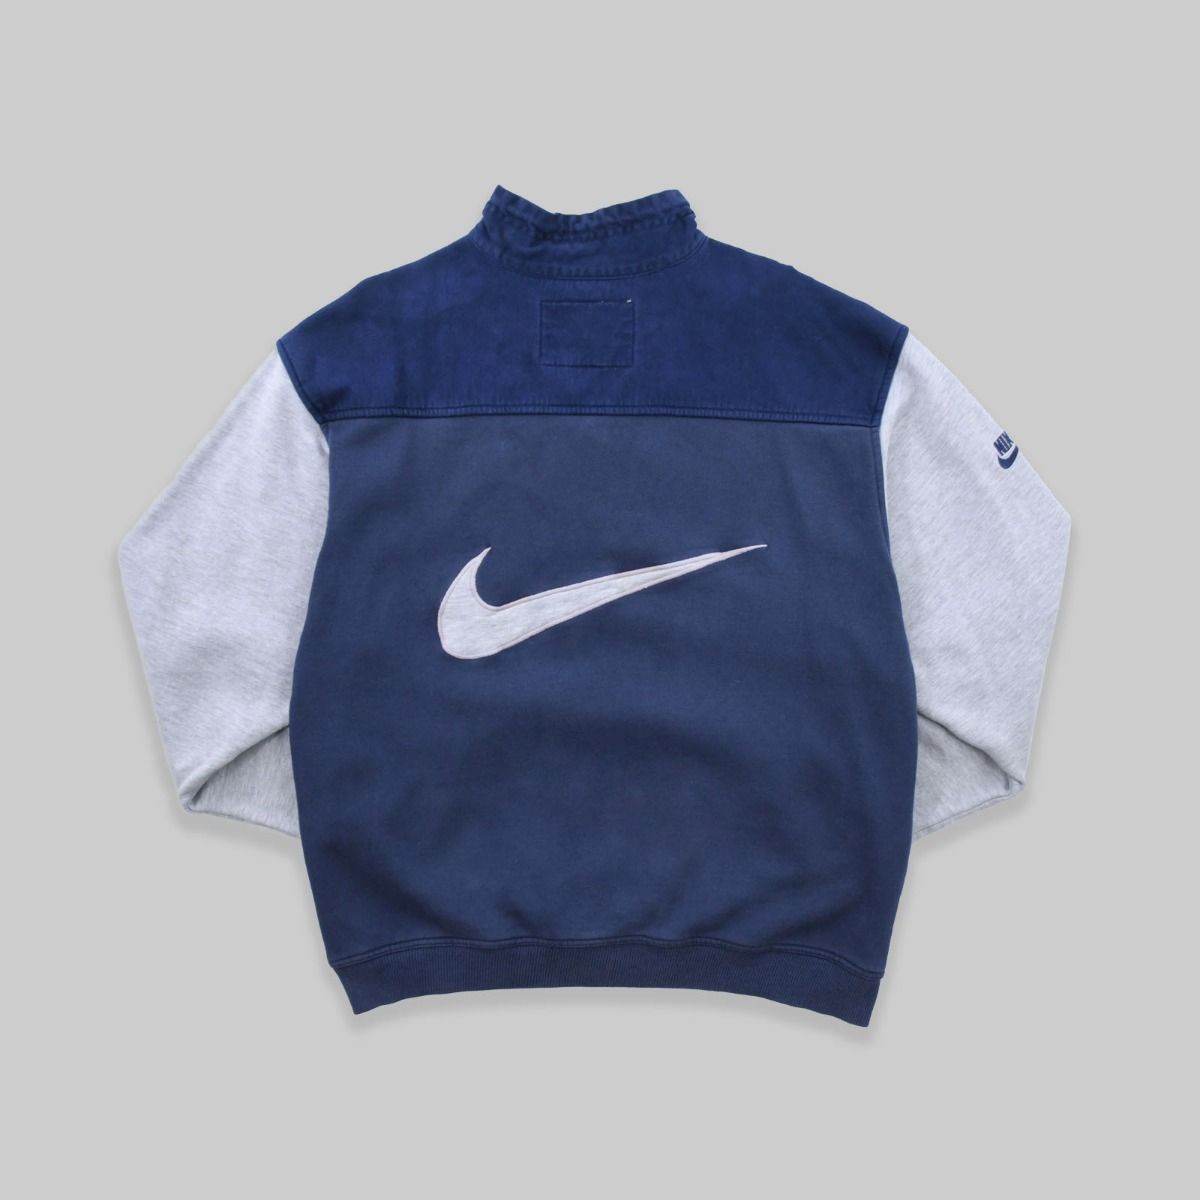 Nike Late 1990s Sweatshirt